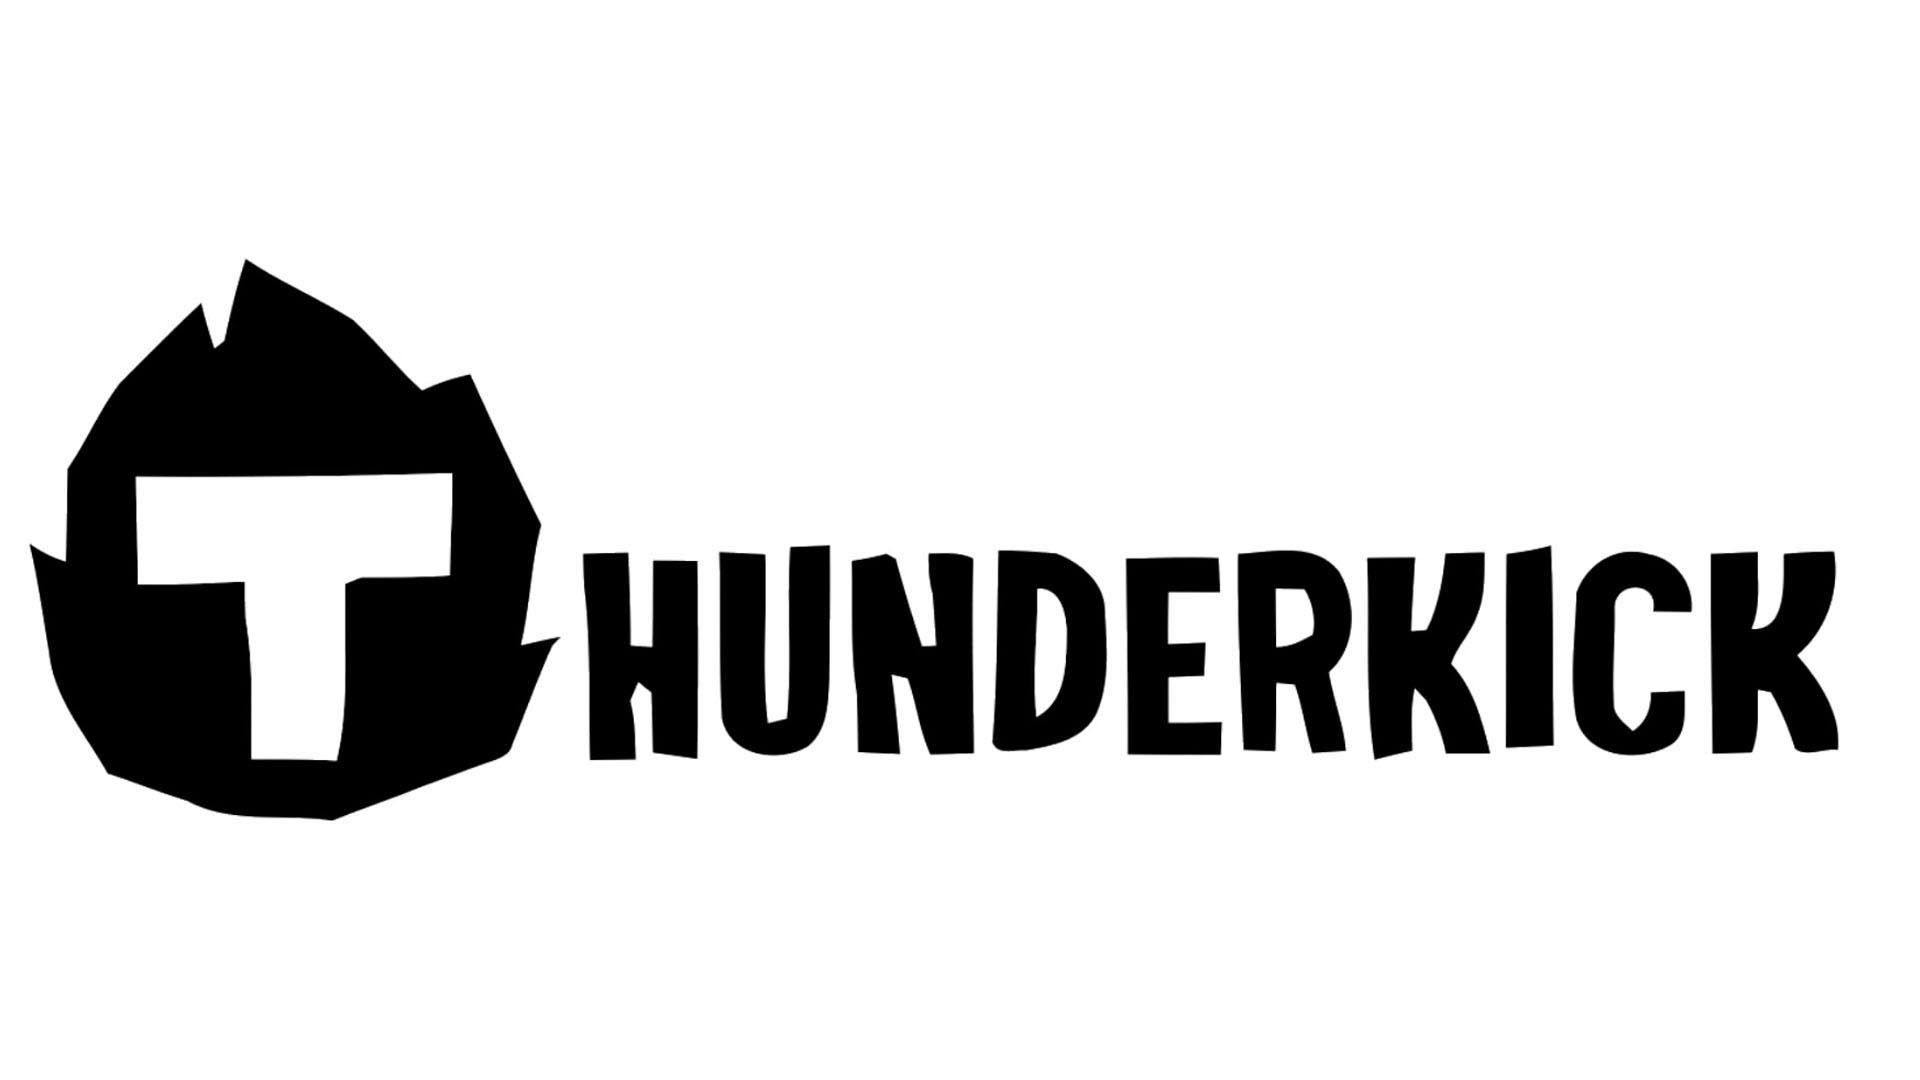 Thunderkick Provider Free Online Games